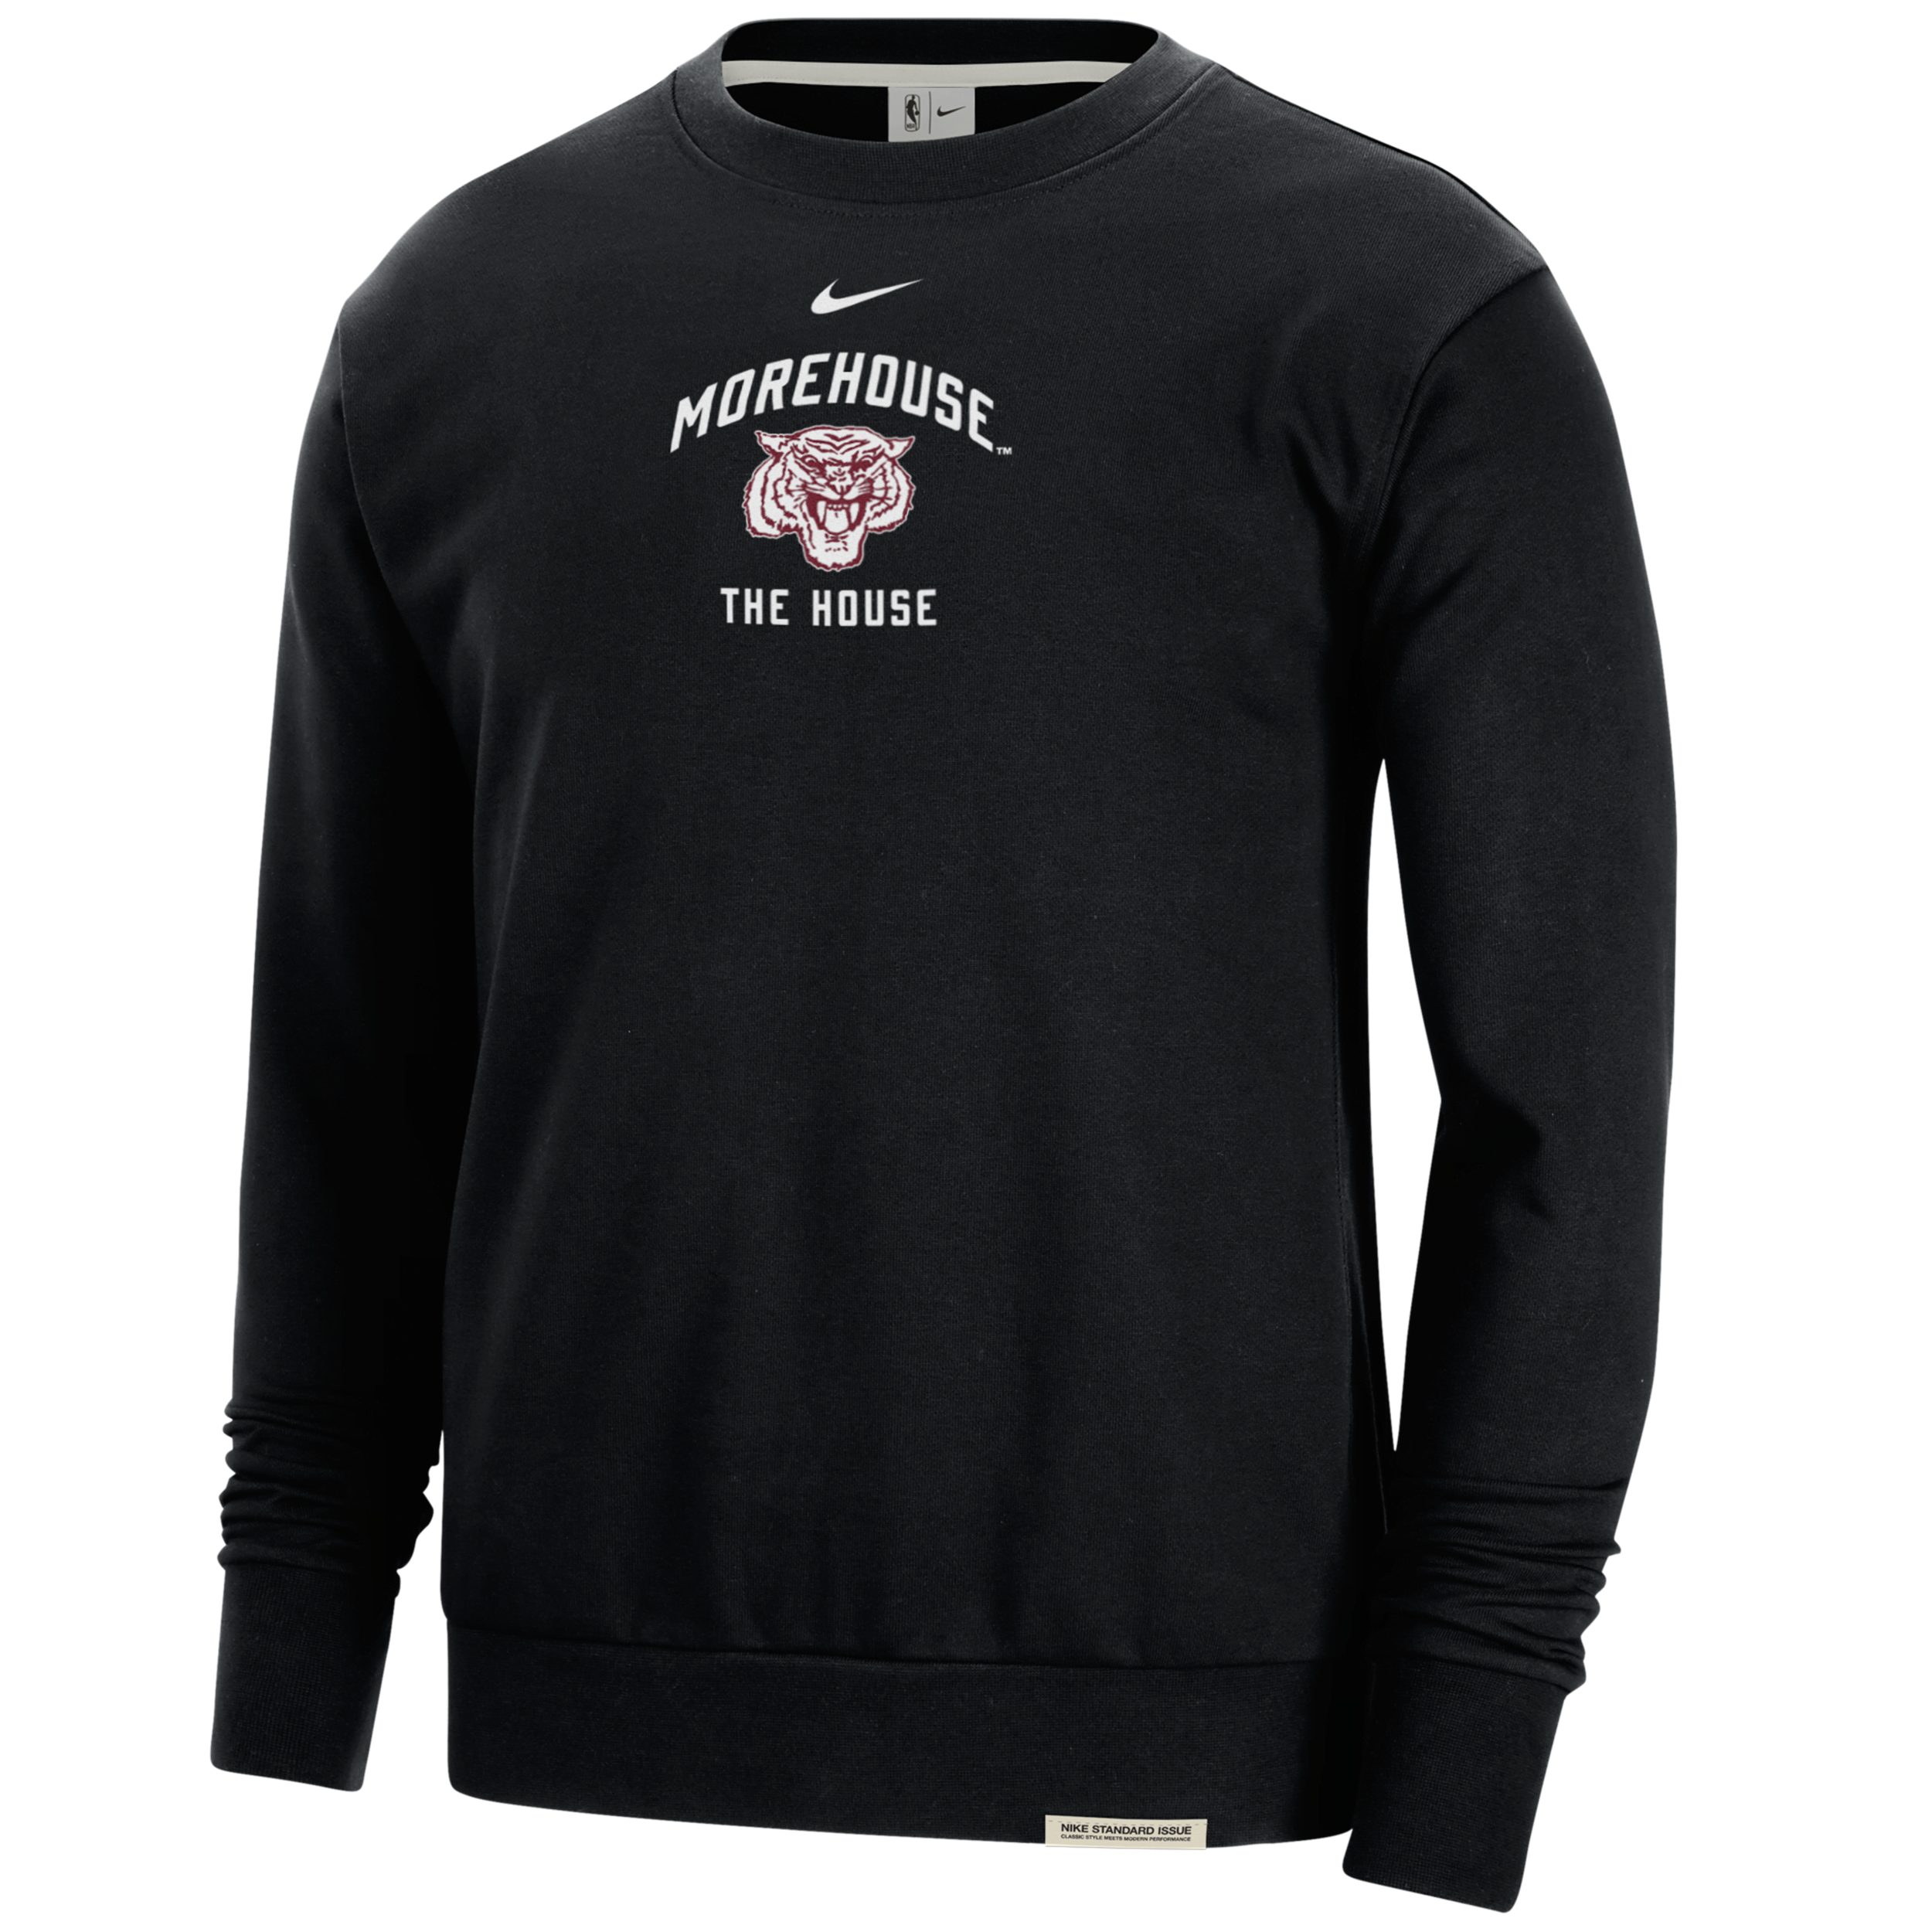 Nike Morehouse Standard Issue  Men's College Fleece Crew-neck Sweatshirt In Black